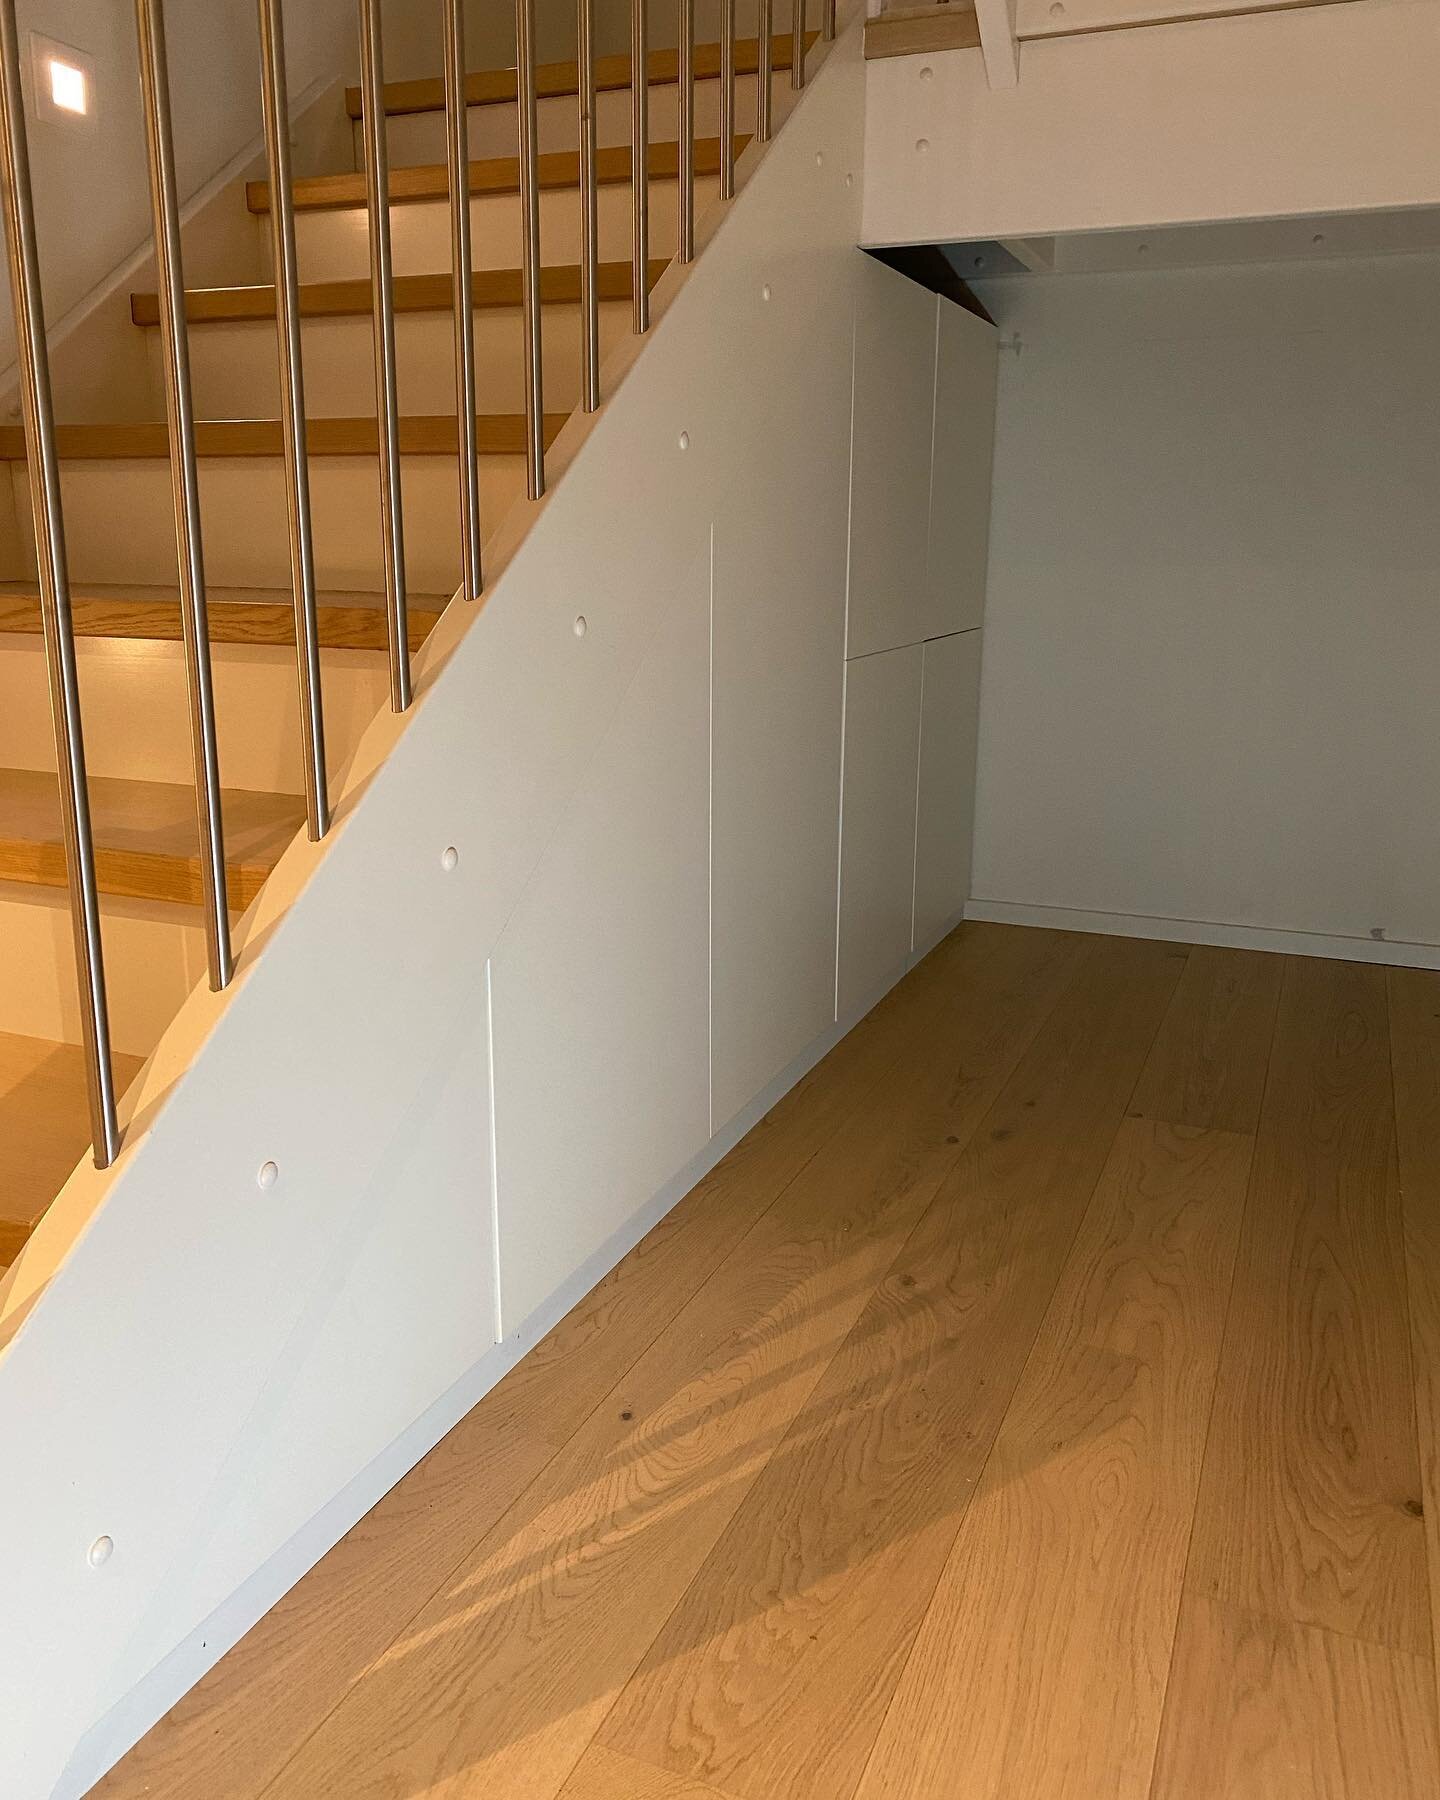 Plass bygd innredning under trapp. Rommet under trappa er ofte vanskelig &aring; utnytte godt. Men her det masse plass til lagring. Ekstra dype skuffer for full utnyttelse. Artig prosjekt. 

Takker for tilliten 🙏🏼